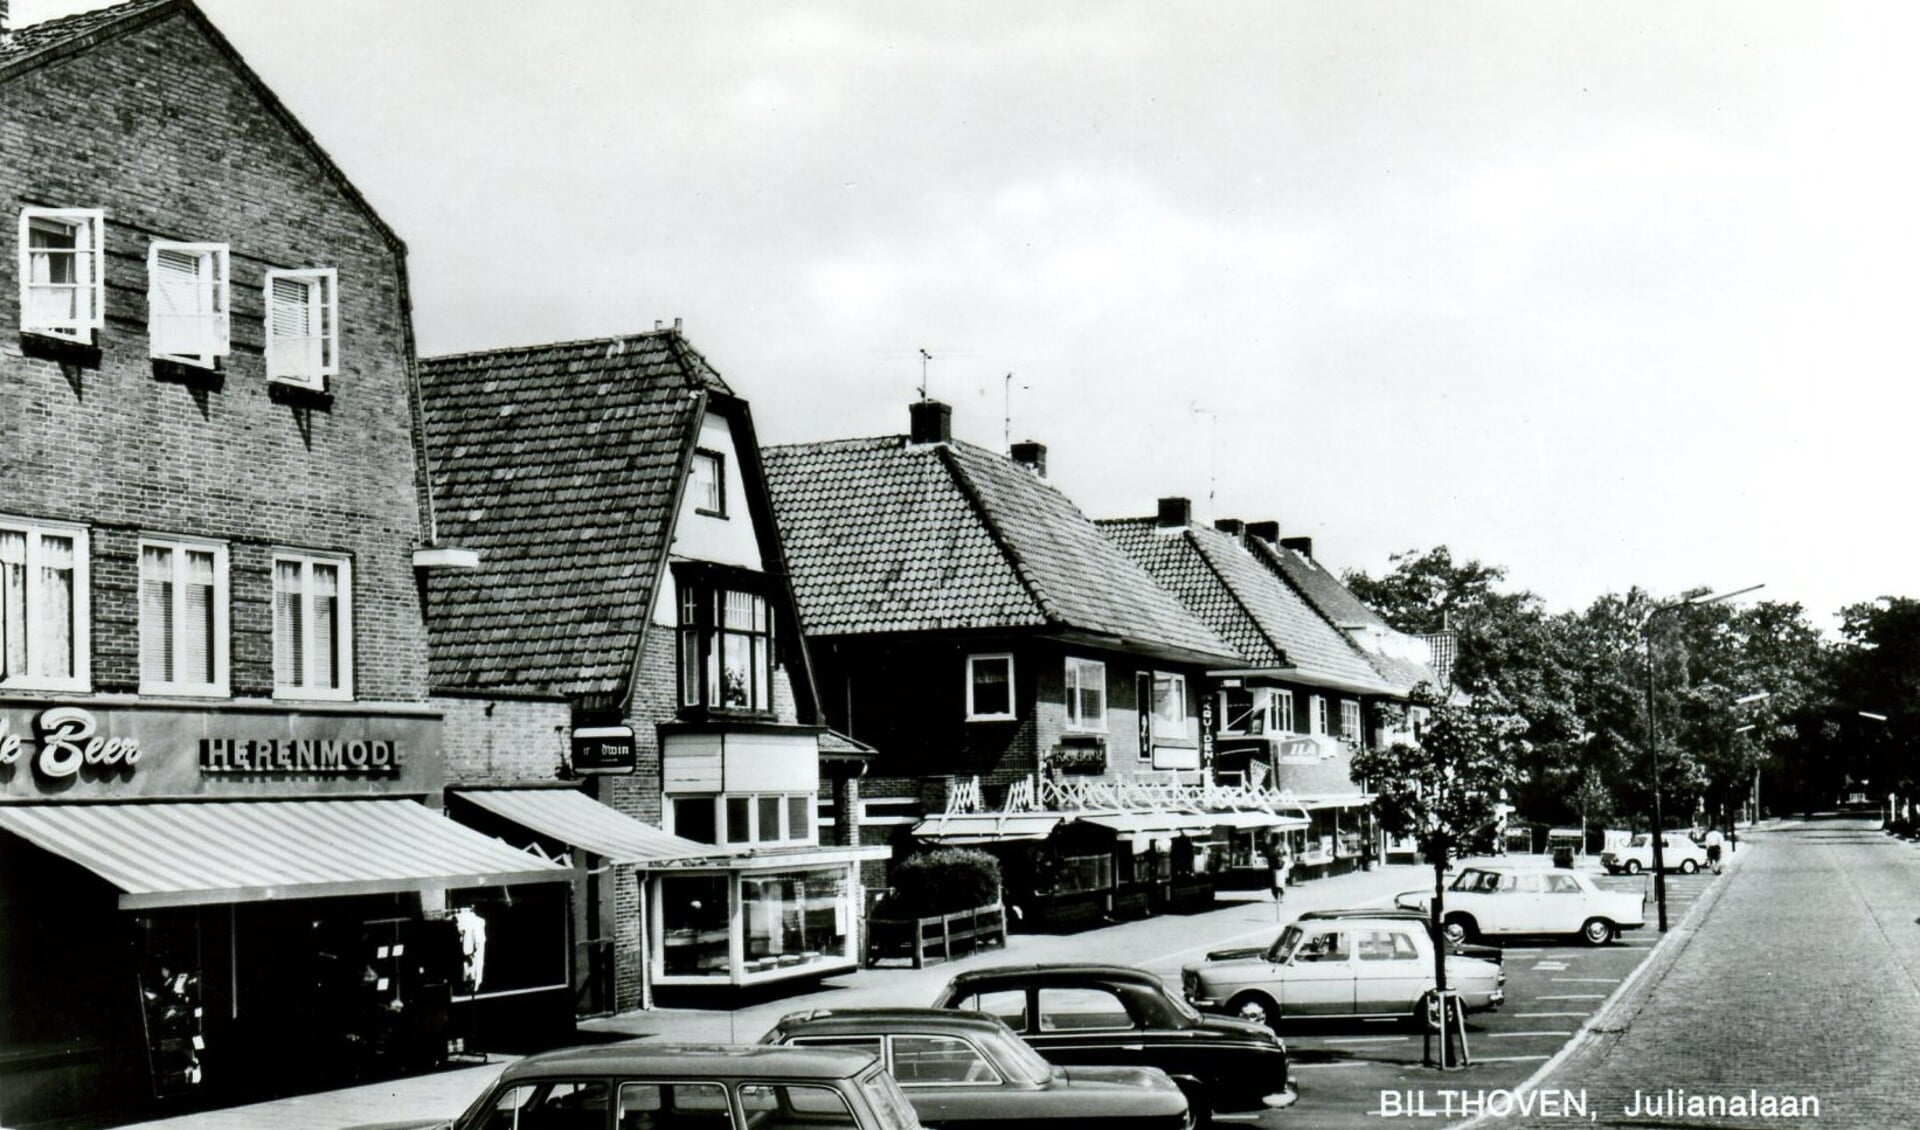 De Beer Herenmode aan de Julianalaan 57. (foto 1969 uit de digitale verzameling van Rienk Miedema)